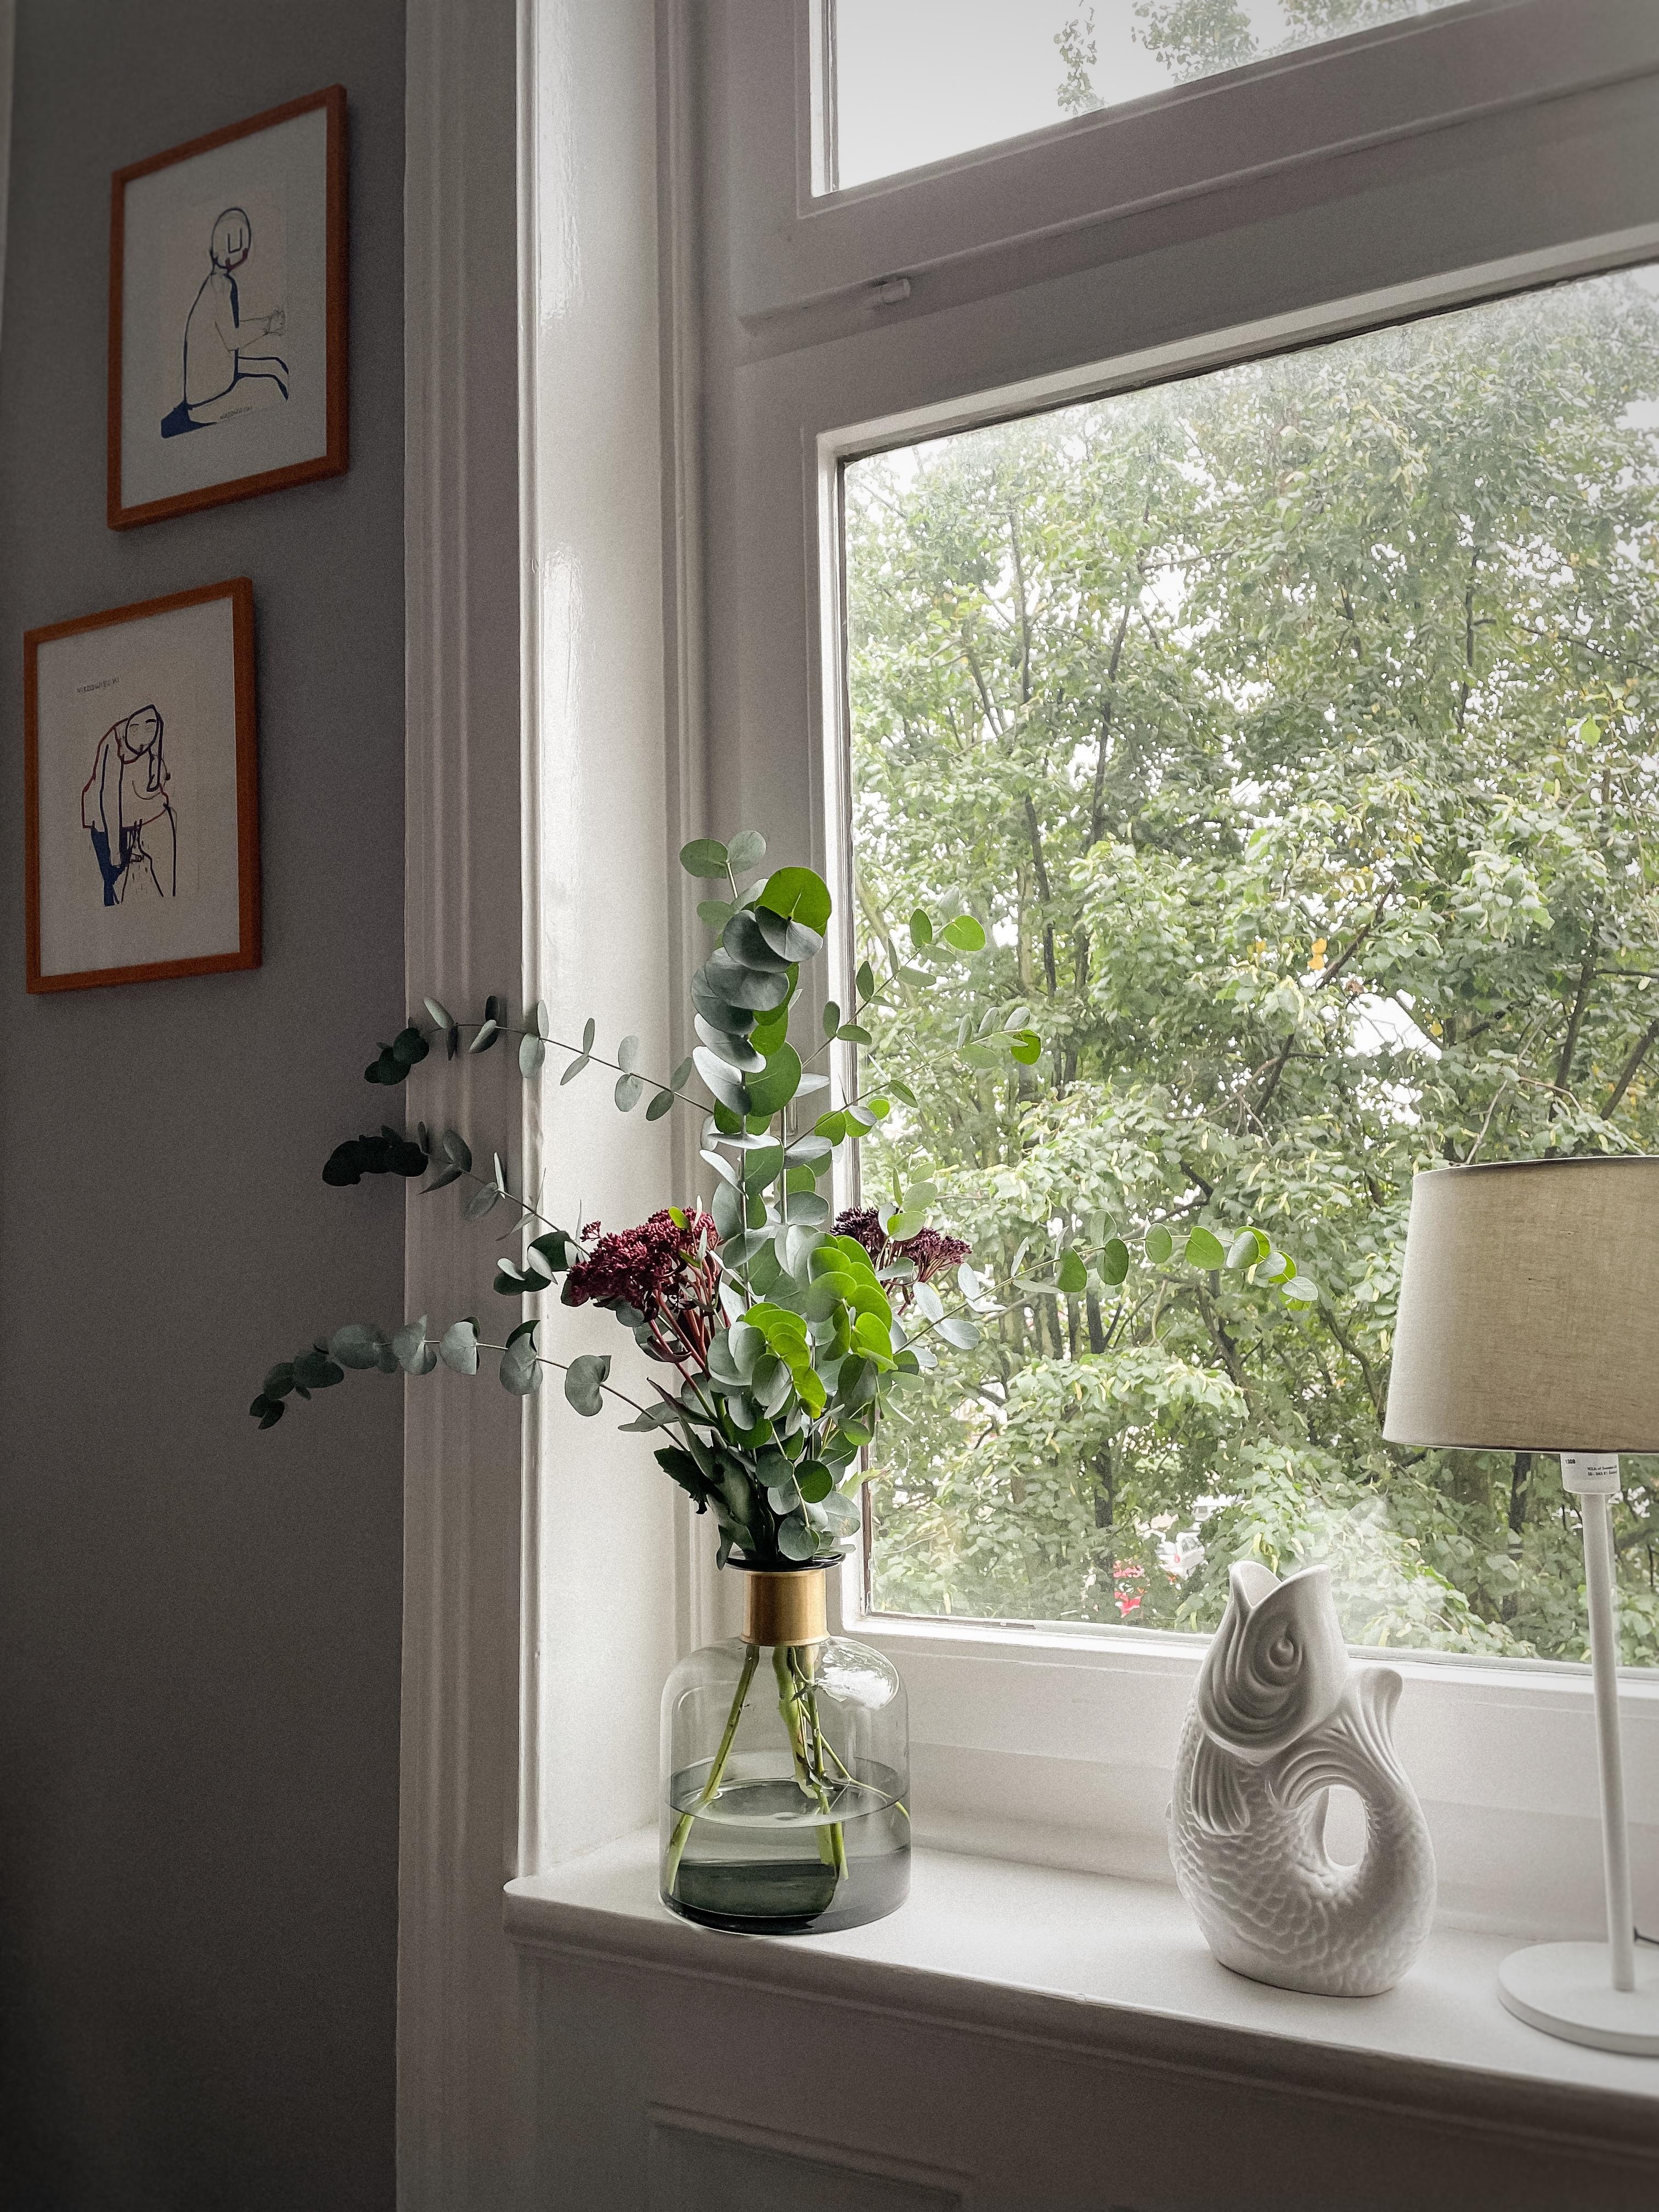 windowview #interior #altbau #bilder #vase #interieur #freshflowers #amfenster #august